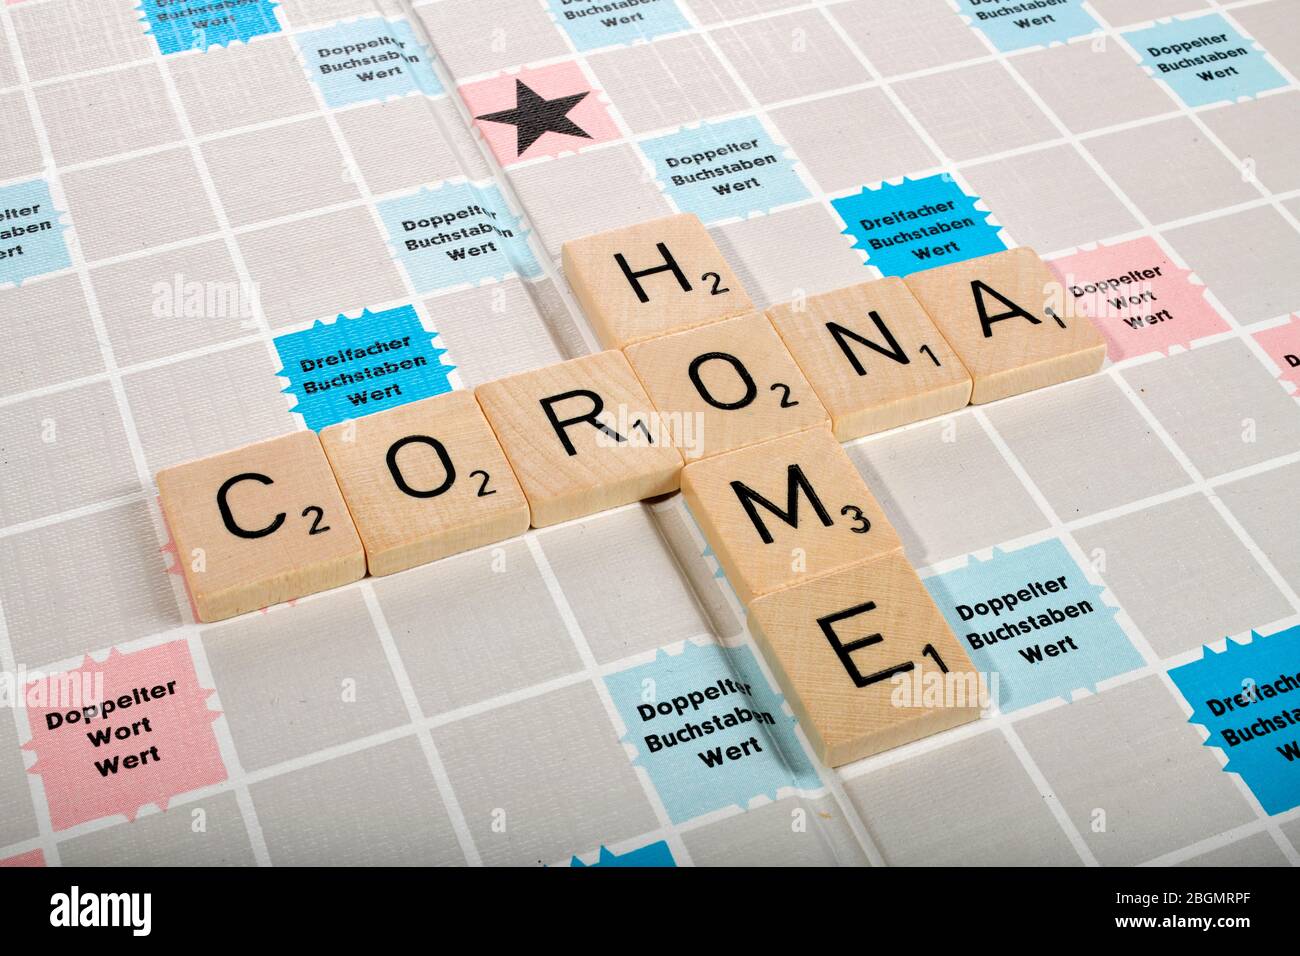 Jeu de lettres, image symbolique travail à domicile, couvre-feu, lettres forment les mots Home et Corona, Corona Crisis, Allemagne Banque D'Images